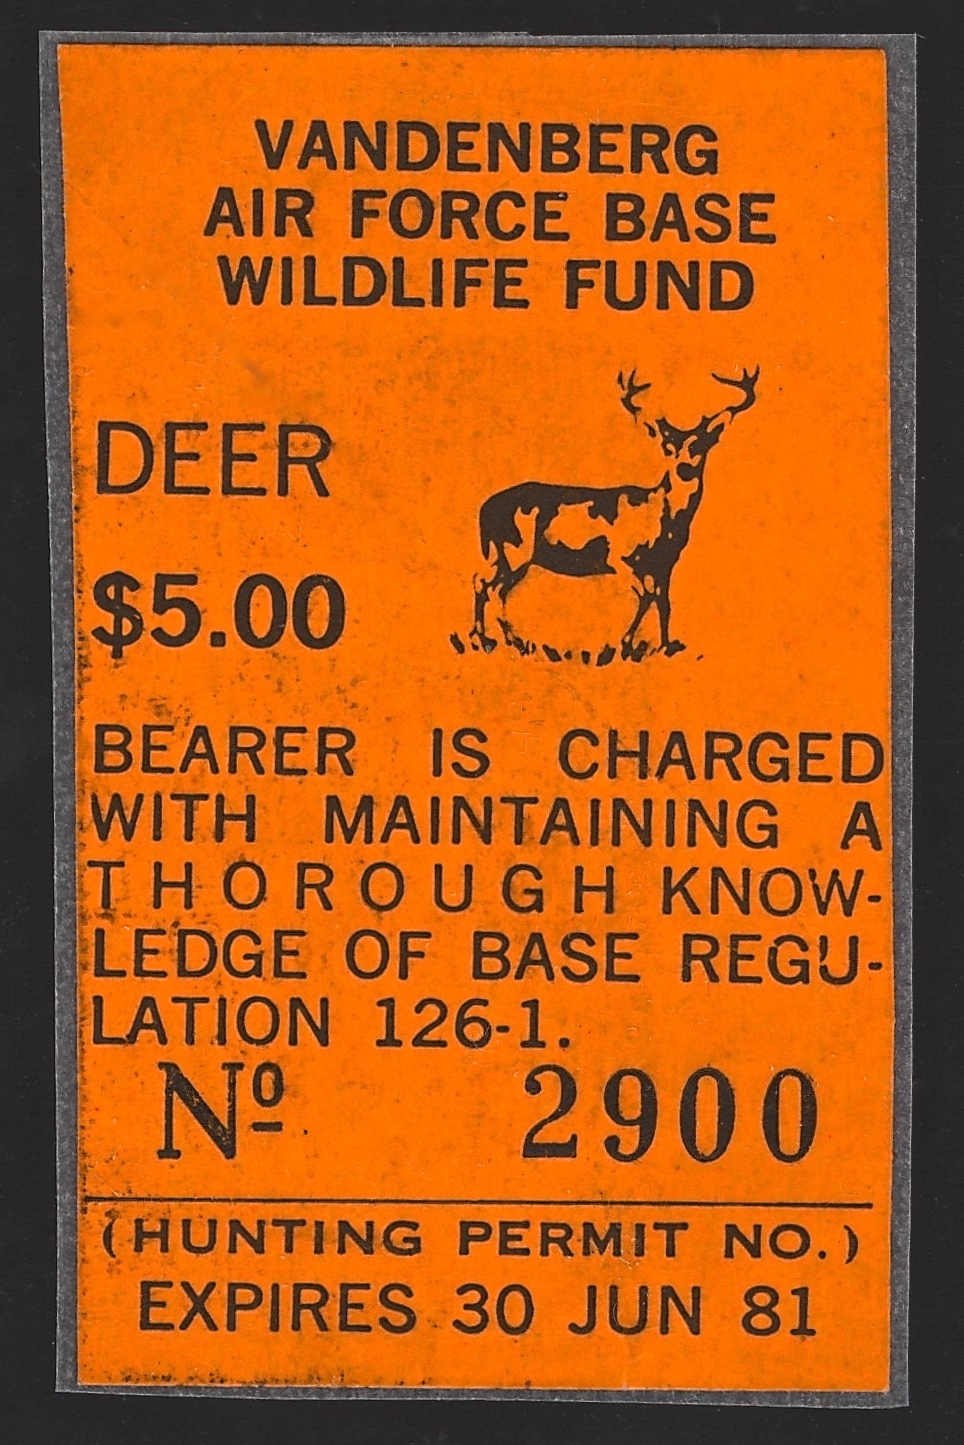 1980-81 VAFB Deer